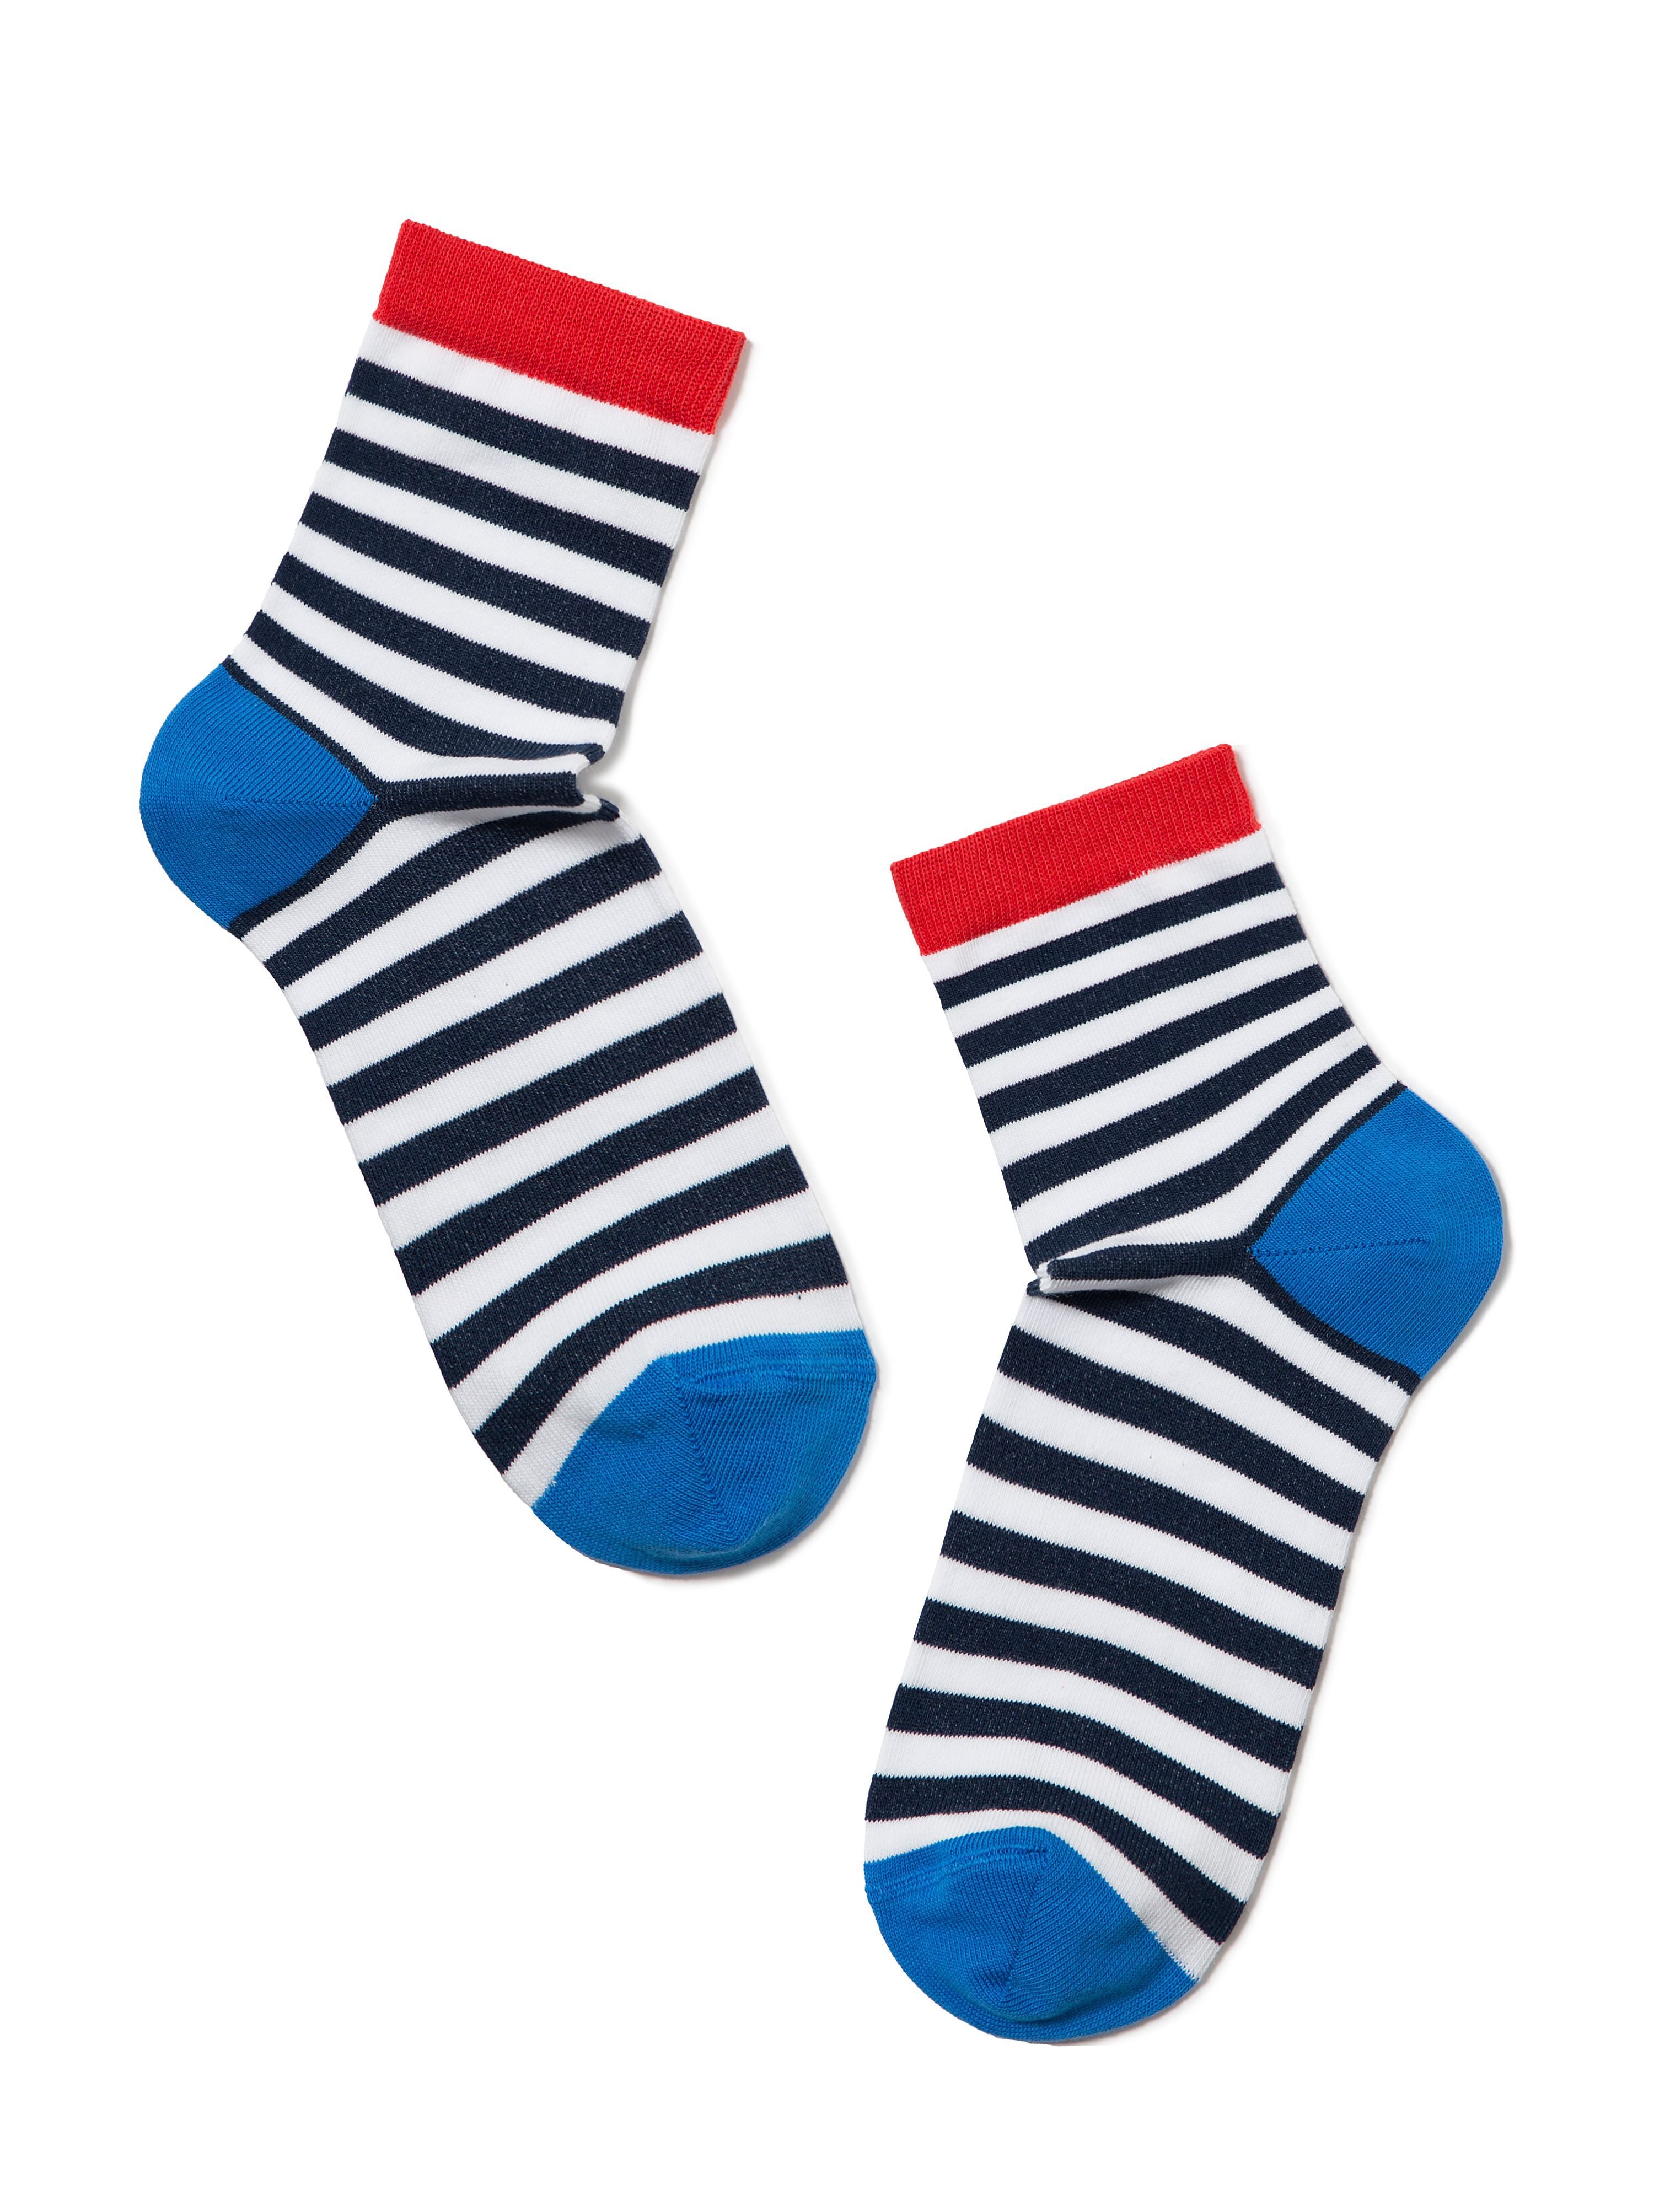 Črtaste ženske nogavice Happy v modro-rdeči kombinaciji